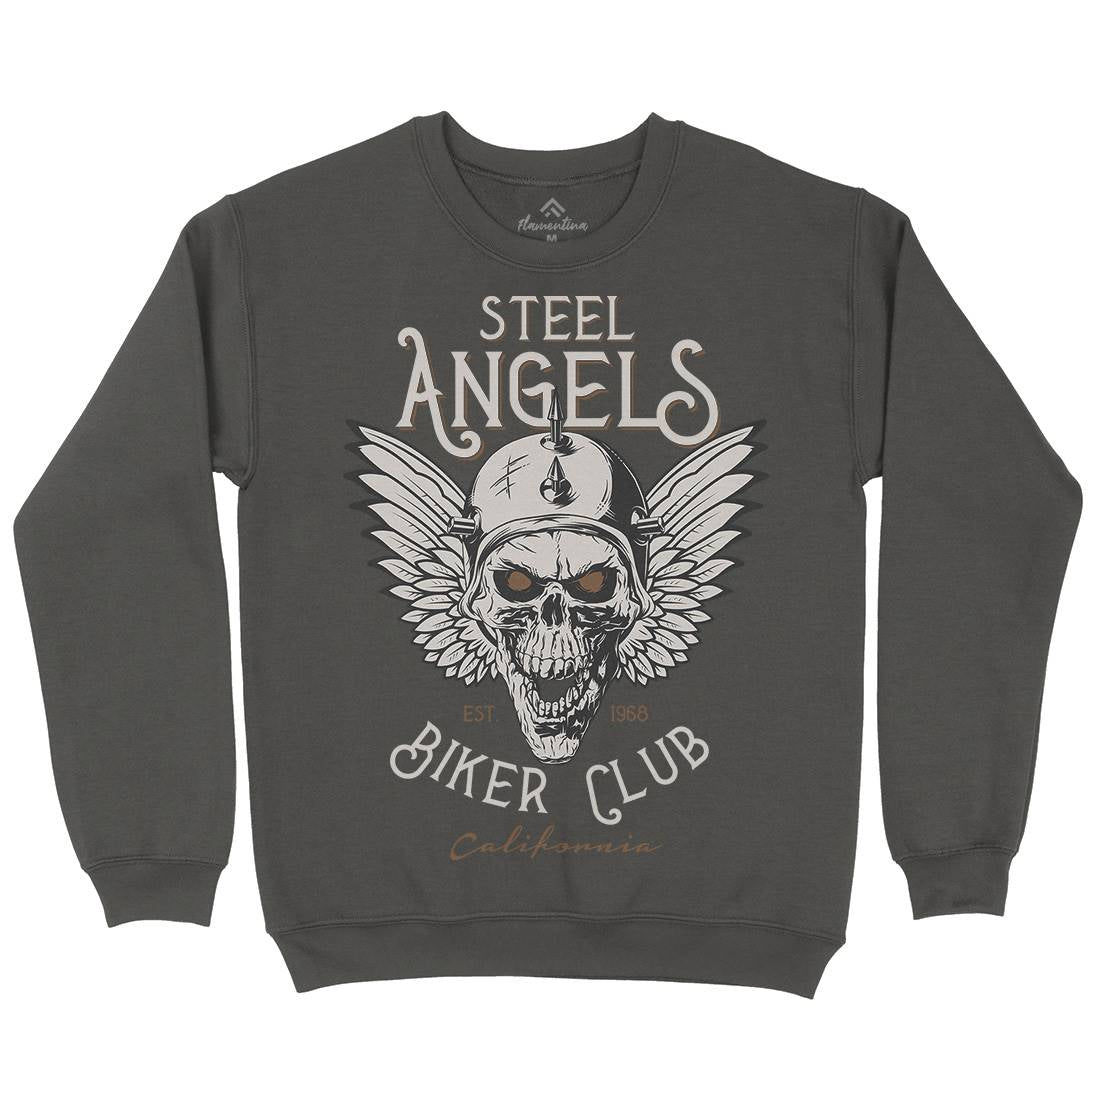 Steel Angels Kids Crew Neck Sweatshirt Motorcycles D984